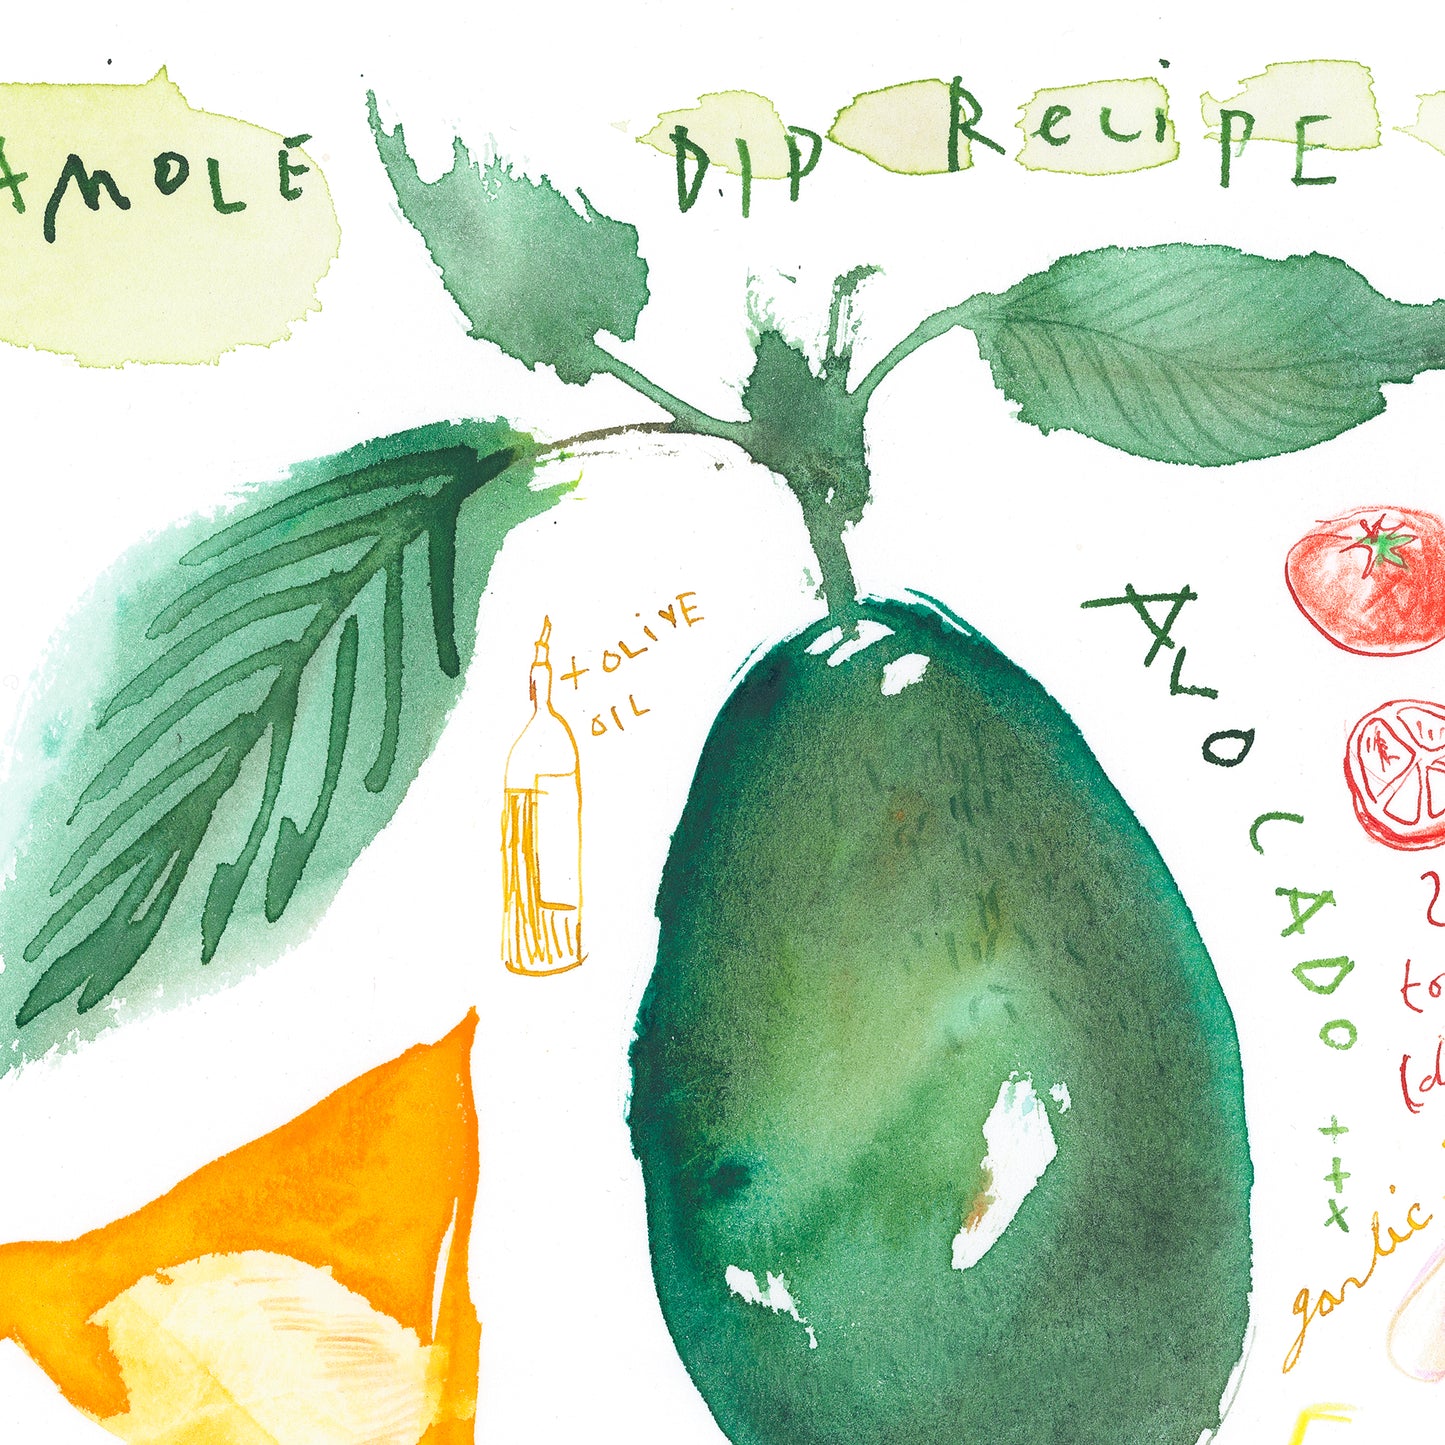 Guacamole recipe - Original watercolor painting